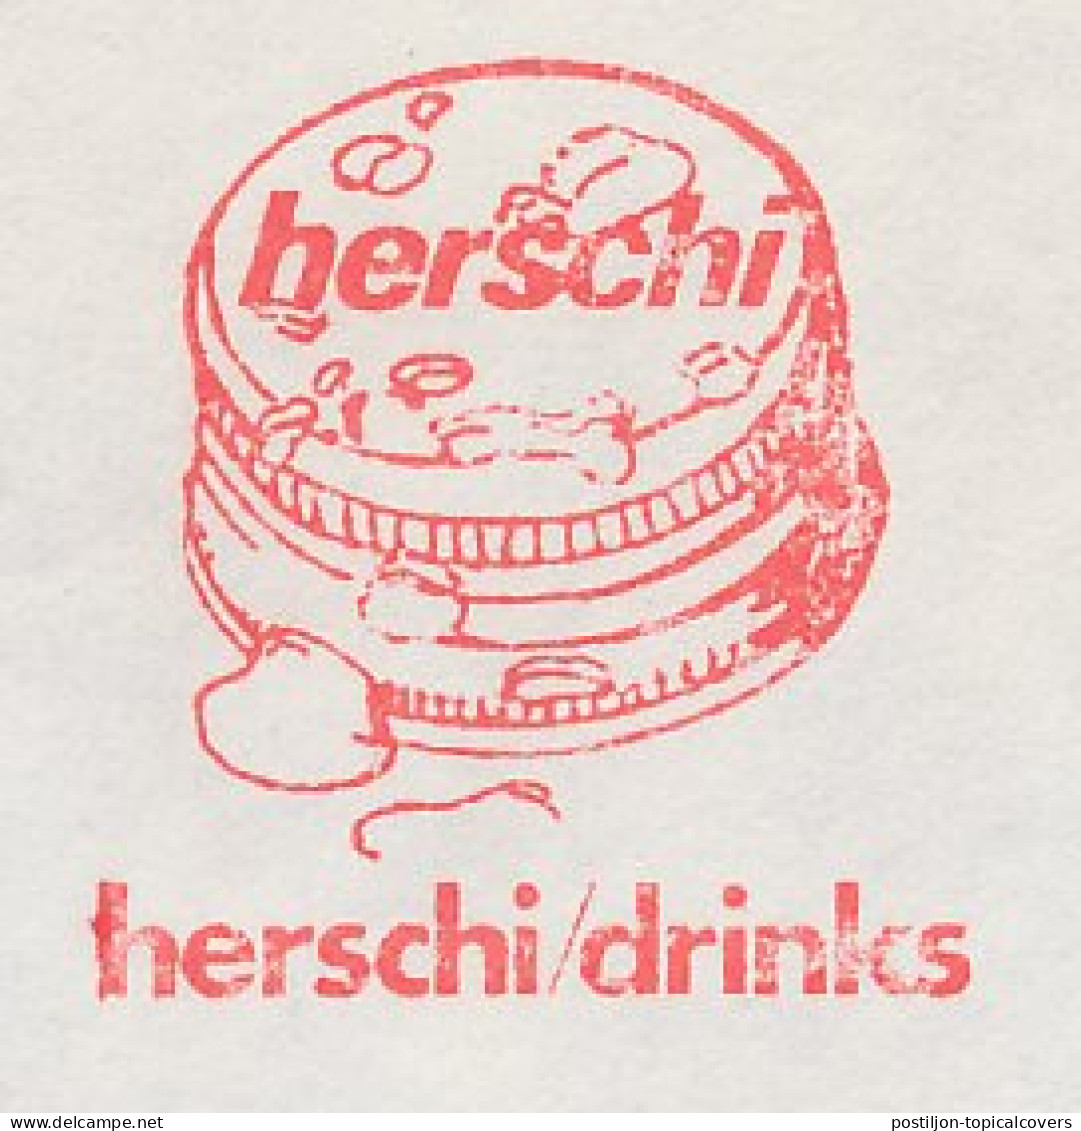 Meter Cover Netherlands 1982 Herschi Drinks - Hoensbroek - Other & Unclassified